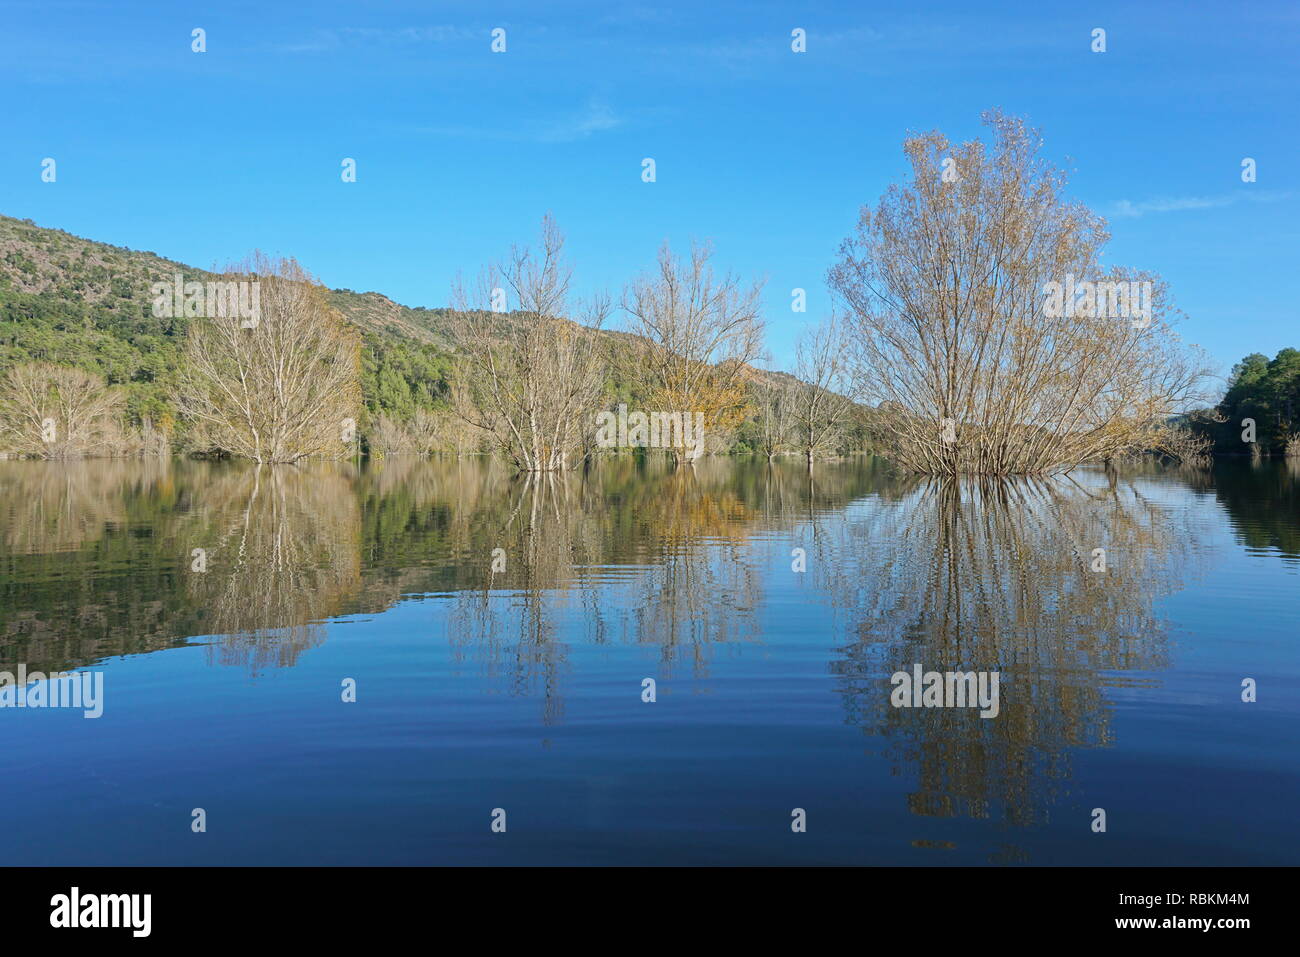 Alberi in piedi in acqua in un lago calmo con riflessioni sulla superficie dell'acqua, Spagna, serbatoio di Boadella, Girona, Alt Emporda Catalogna Foto Stock